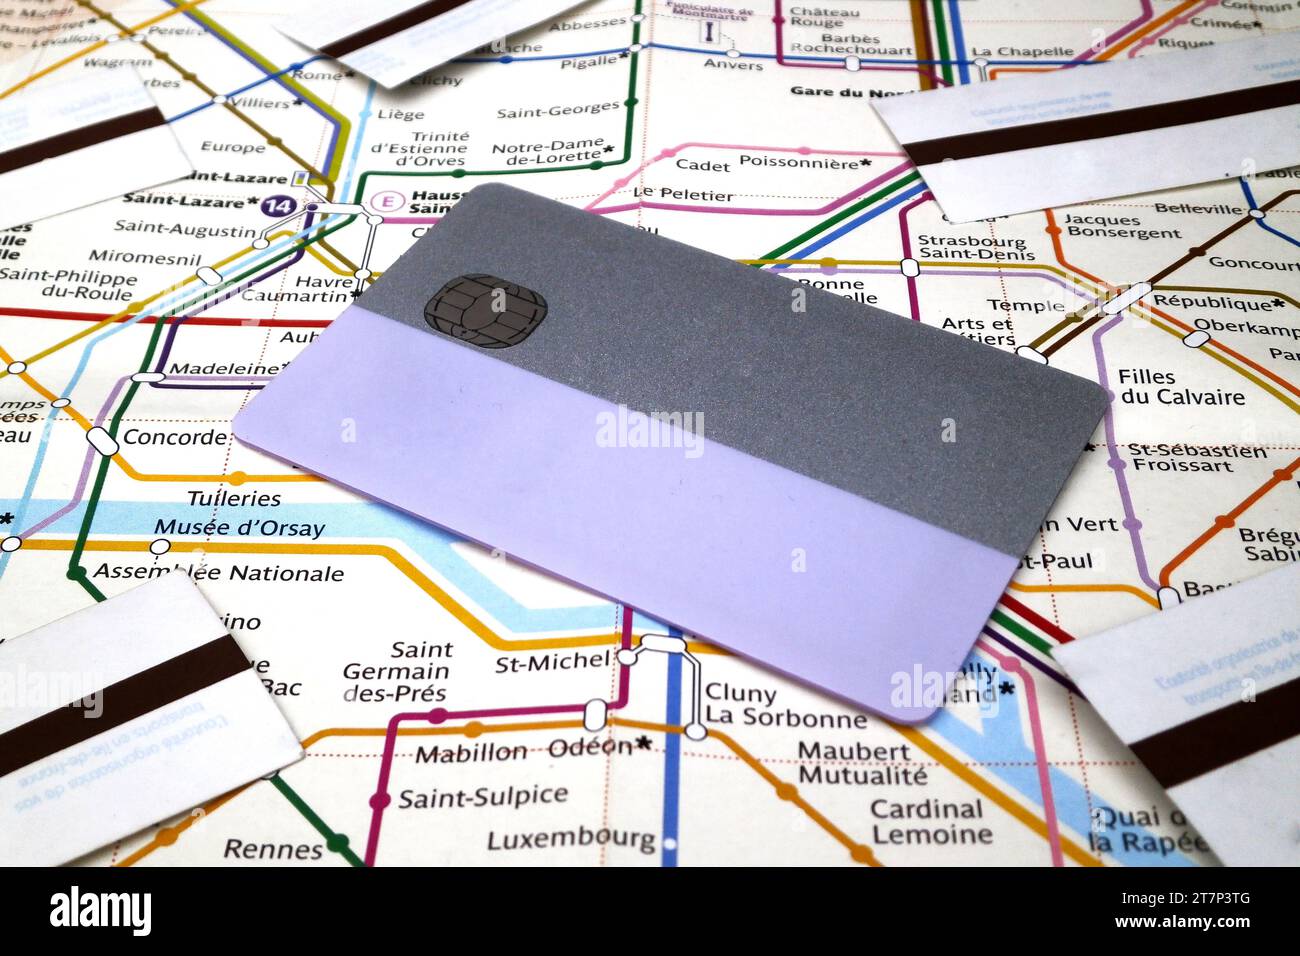 Une carte de pass de métro et des tickets de métro en haut d'une carte du métro de Paris. Le permet de voyager dans tout le Grand Paris pendant 2 semaines ou un mois en subwa Banque D'Images